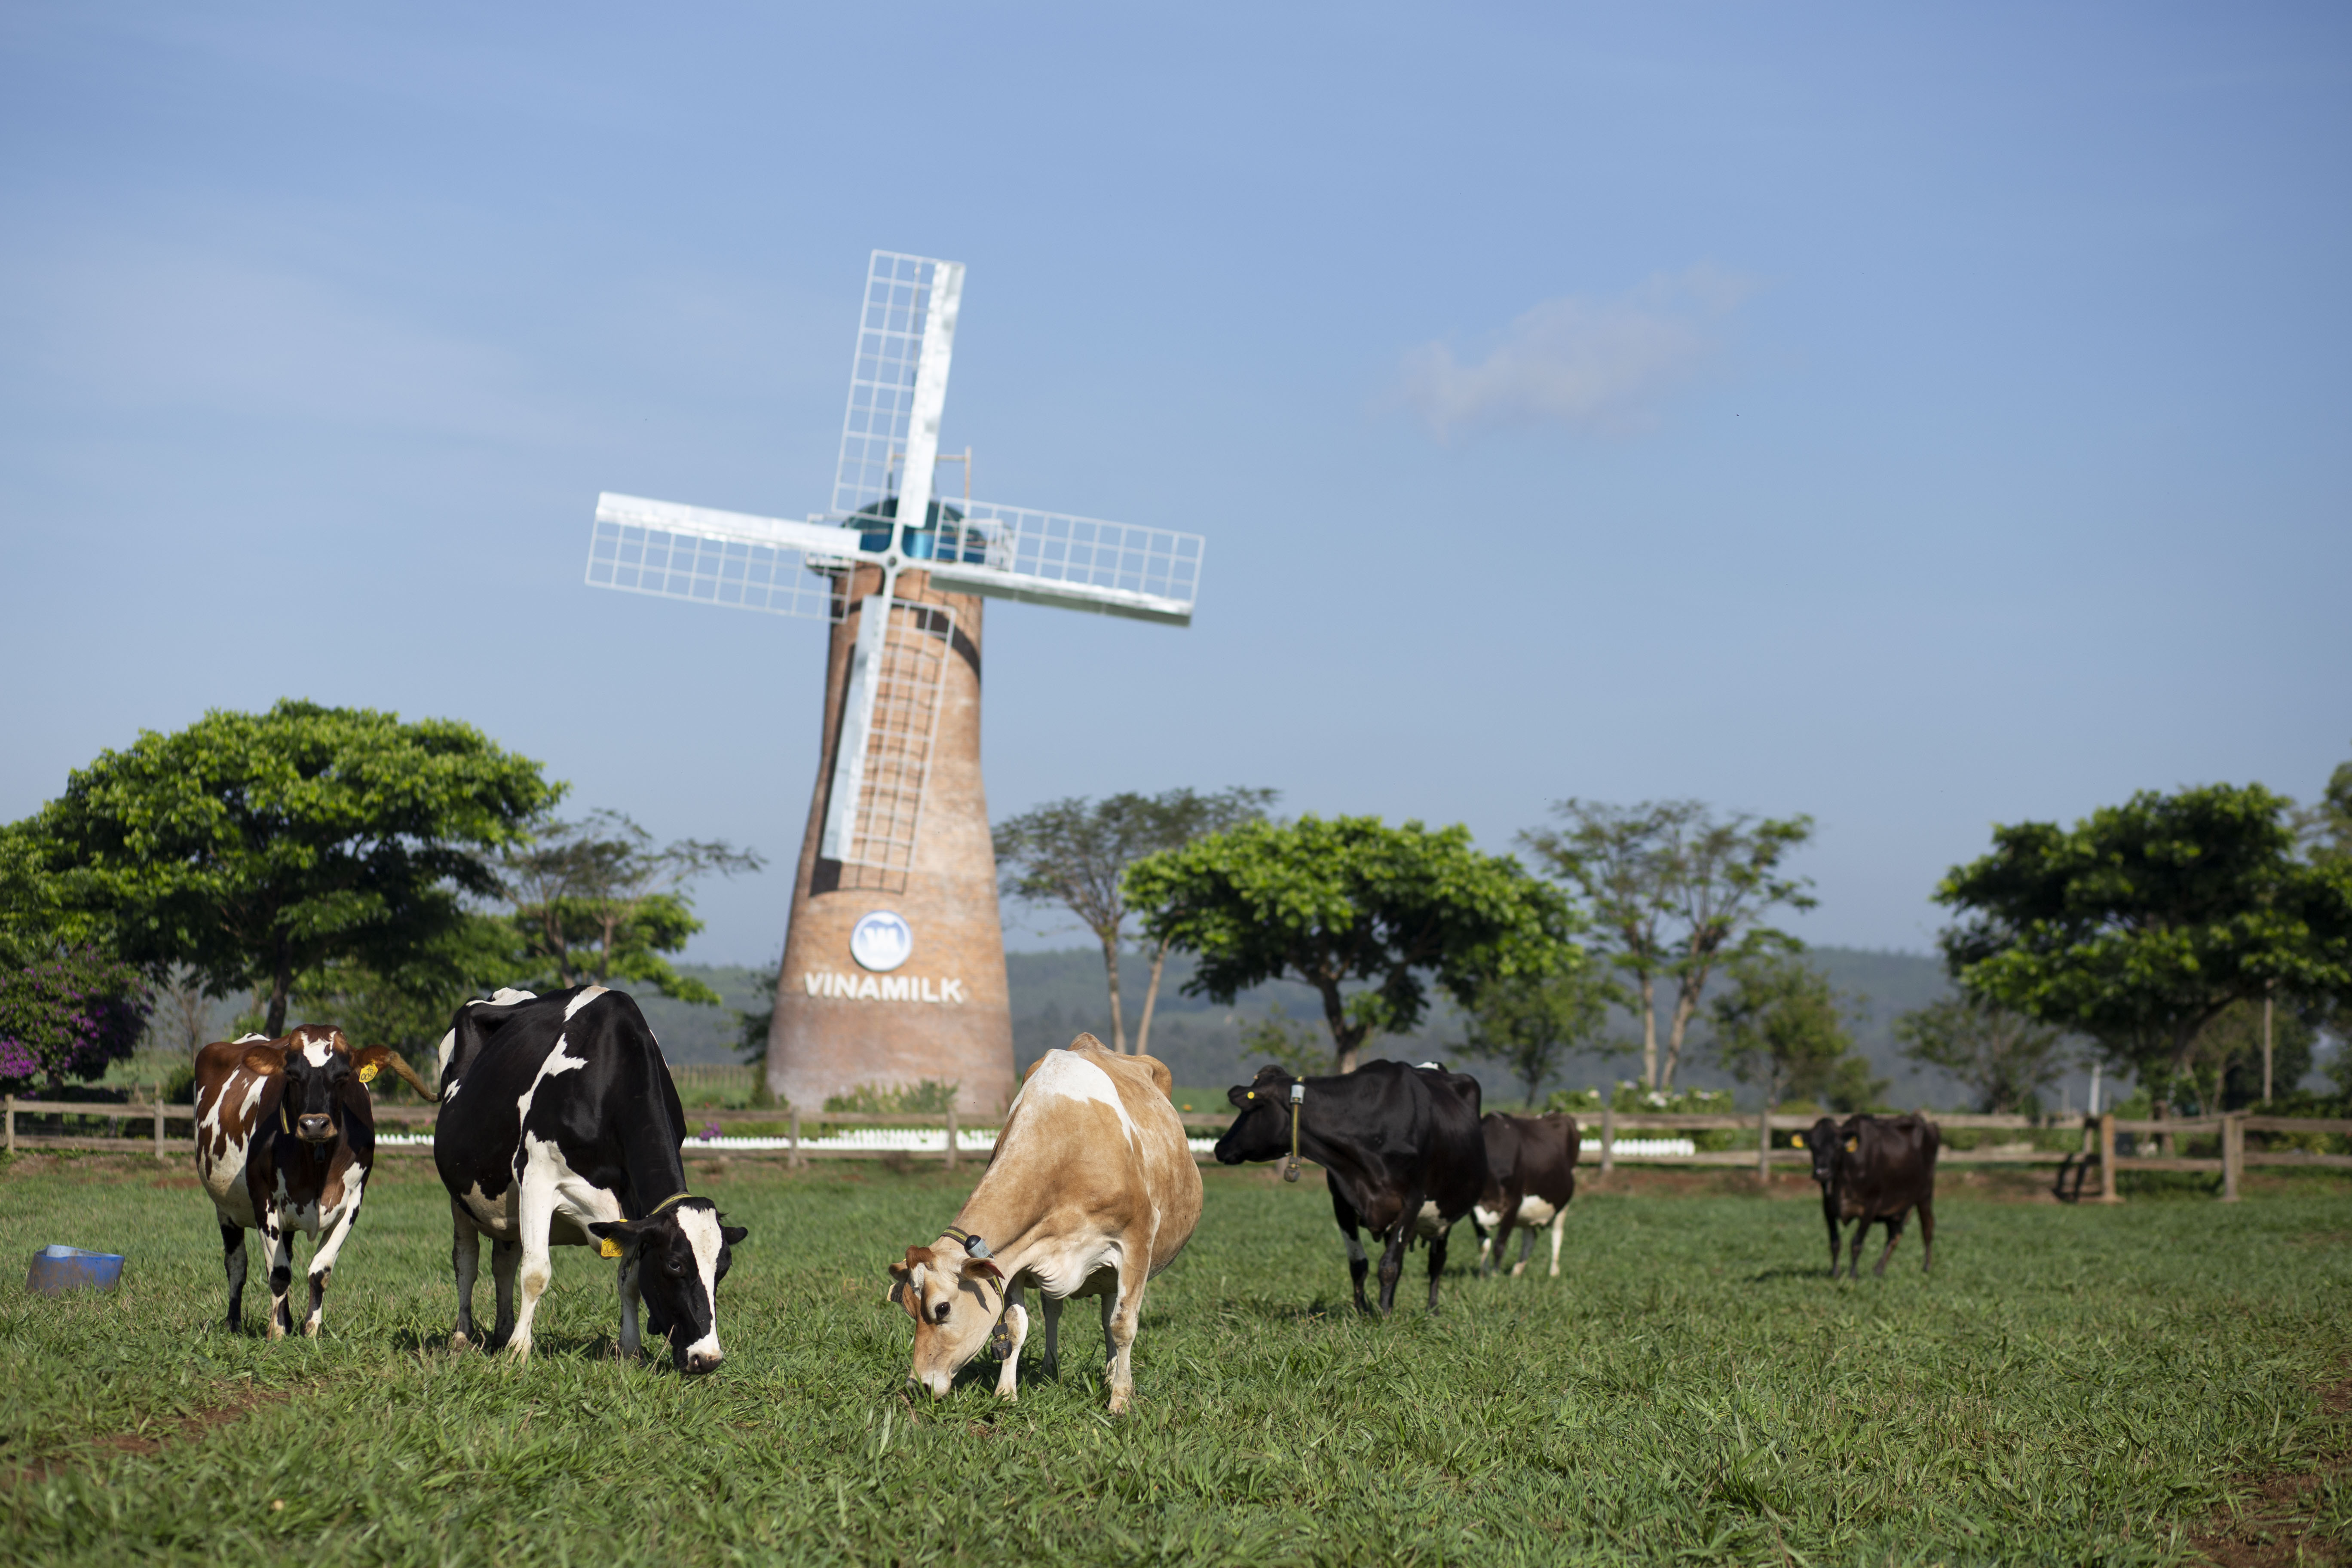 Vinamilk hiện c&oacute; 2 trang trại b&ograve; sữa organic tại Việt Nam v&agrave; dự &aacute;n tổ hợp trang trạiorganic tại L&agrave;o dự kiến sẽ đi v&agrave;o hoạt động đầu năm 2022.